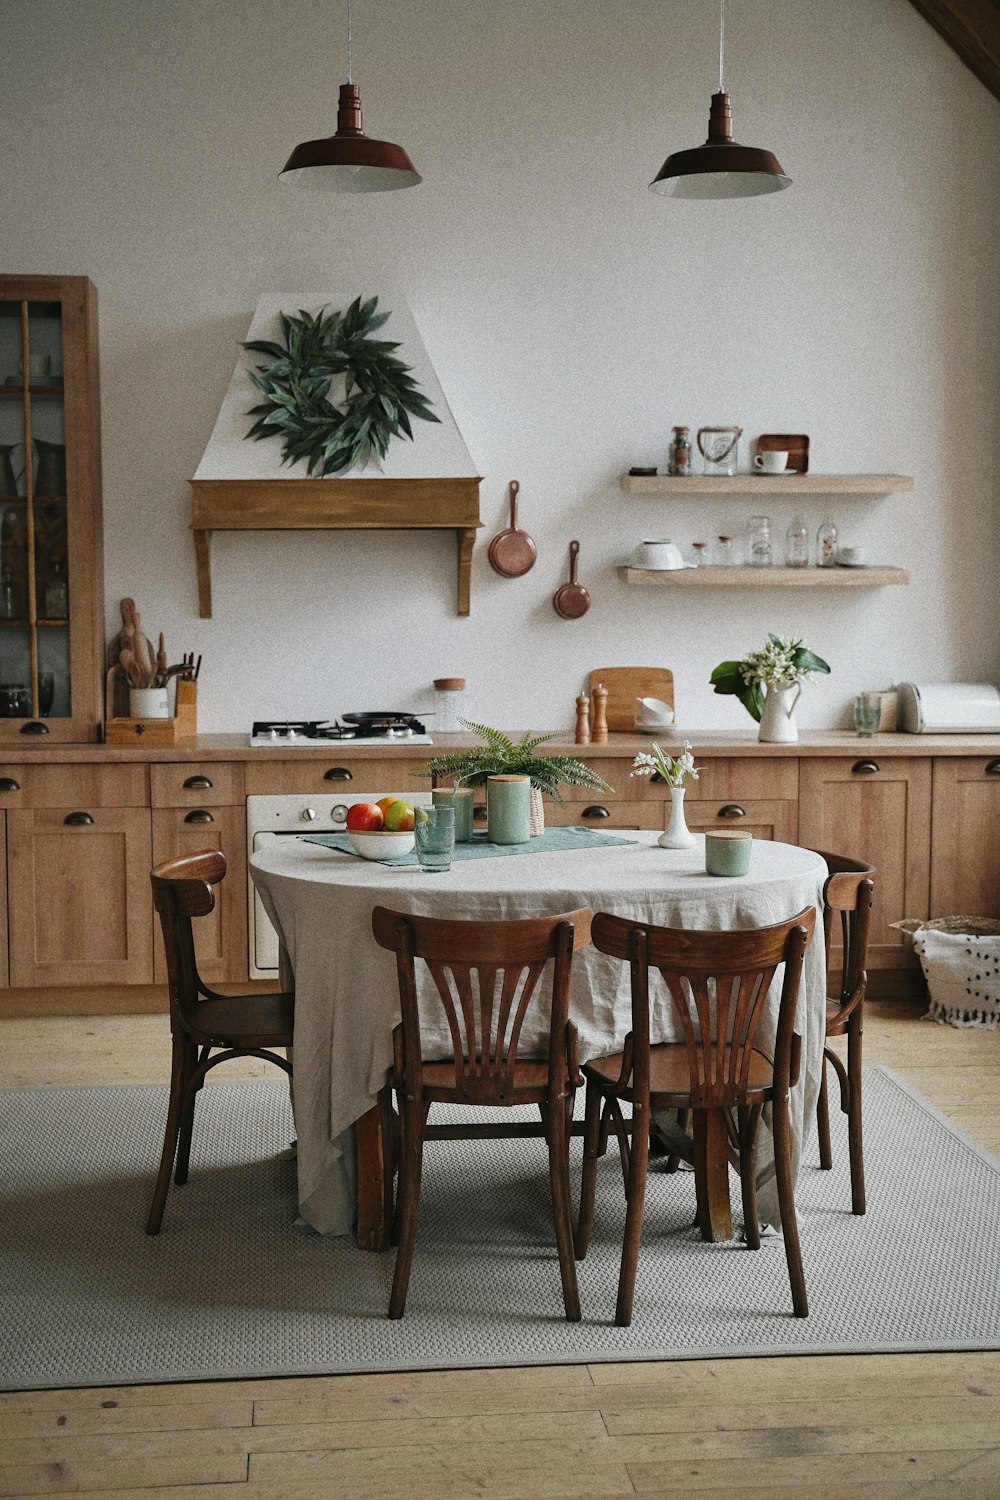 una cocina con una mesa y sillas y una planta en maceta